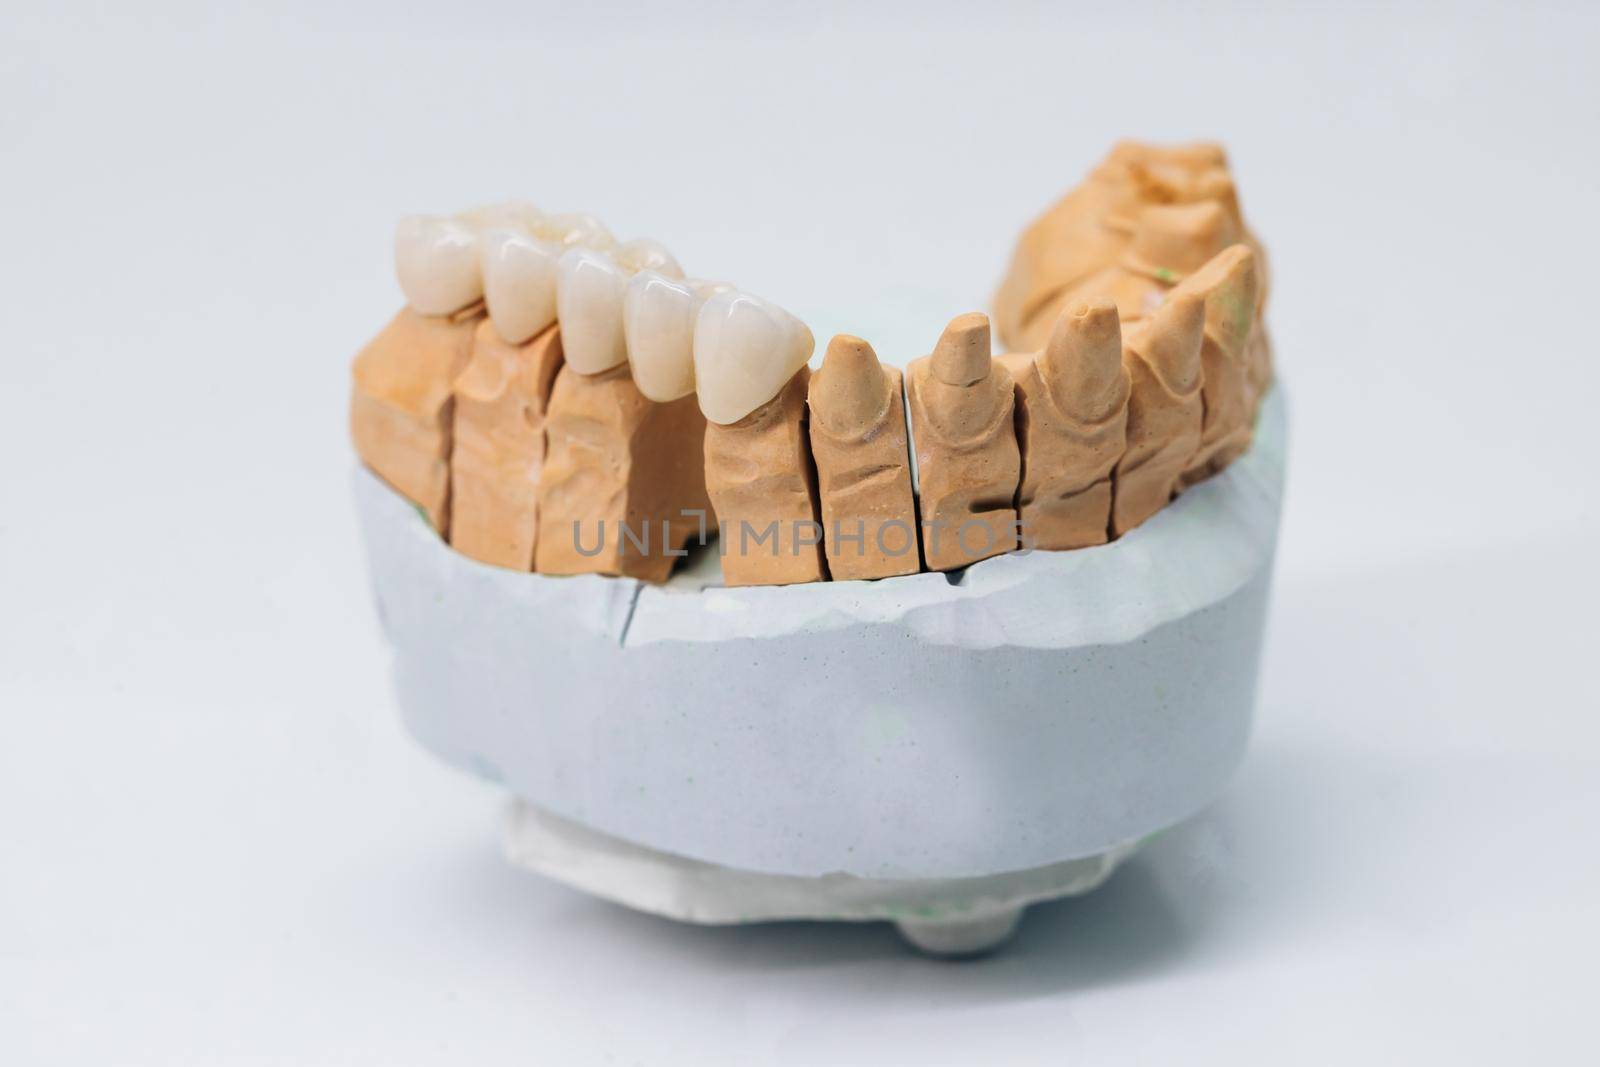 Metal free ceramic dental crowns on plaster model. Metal ceramic teeth and bridges by uflypro